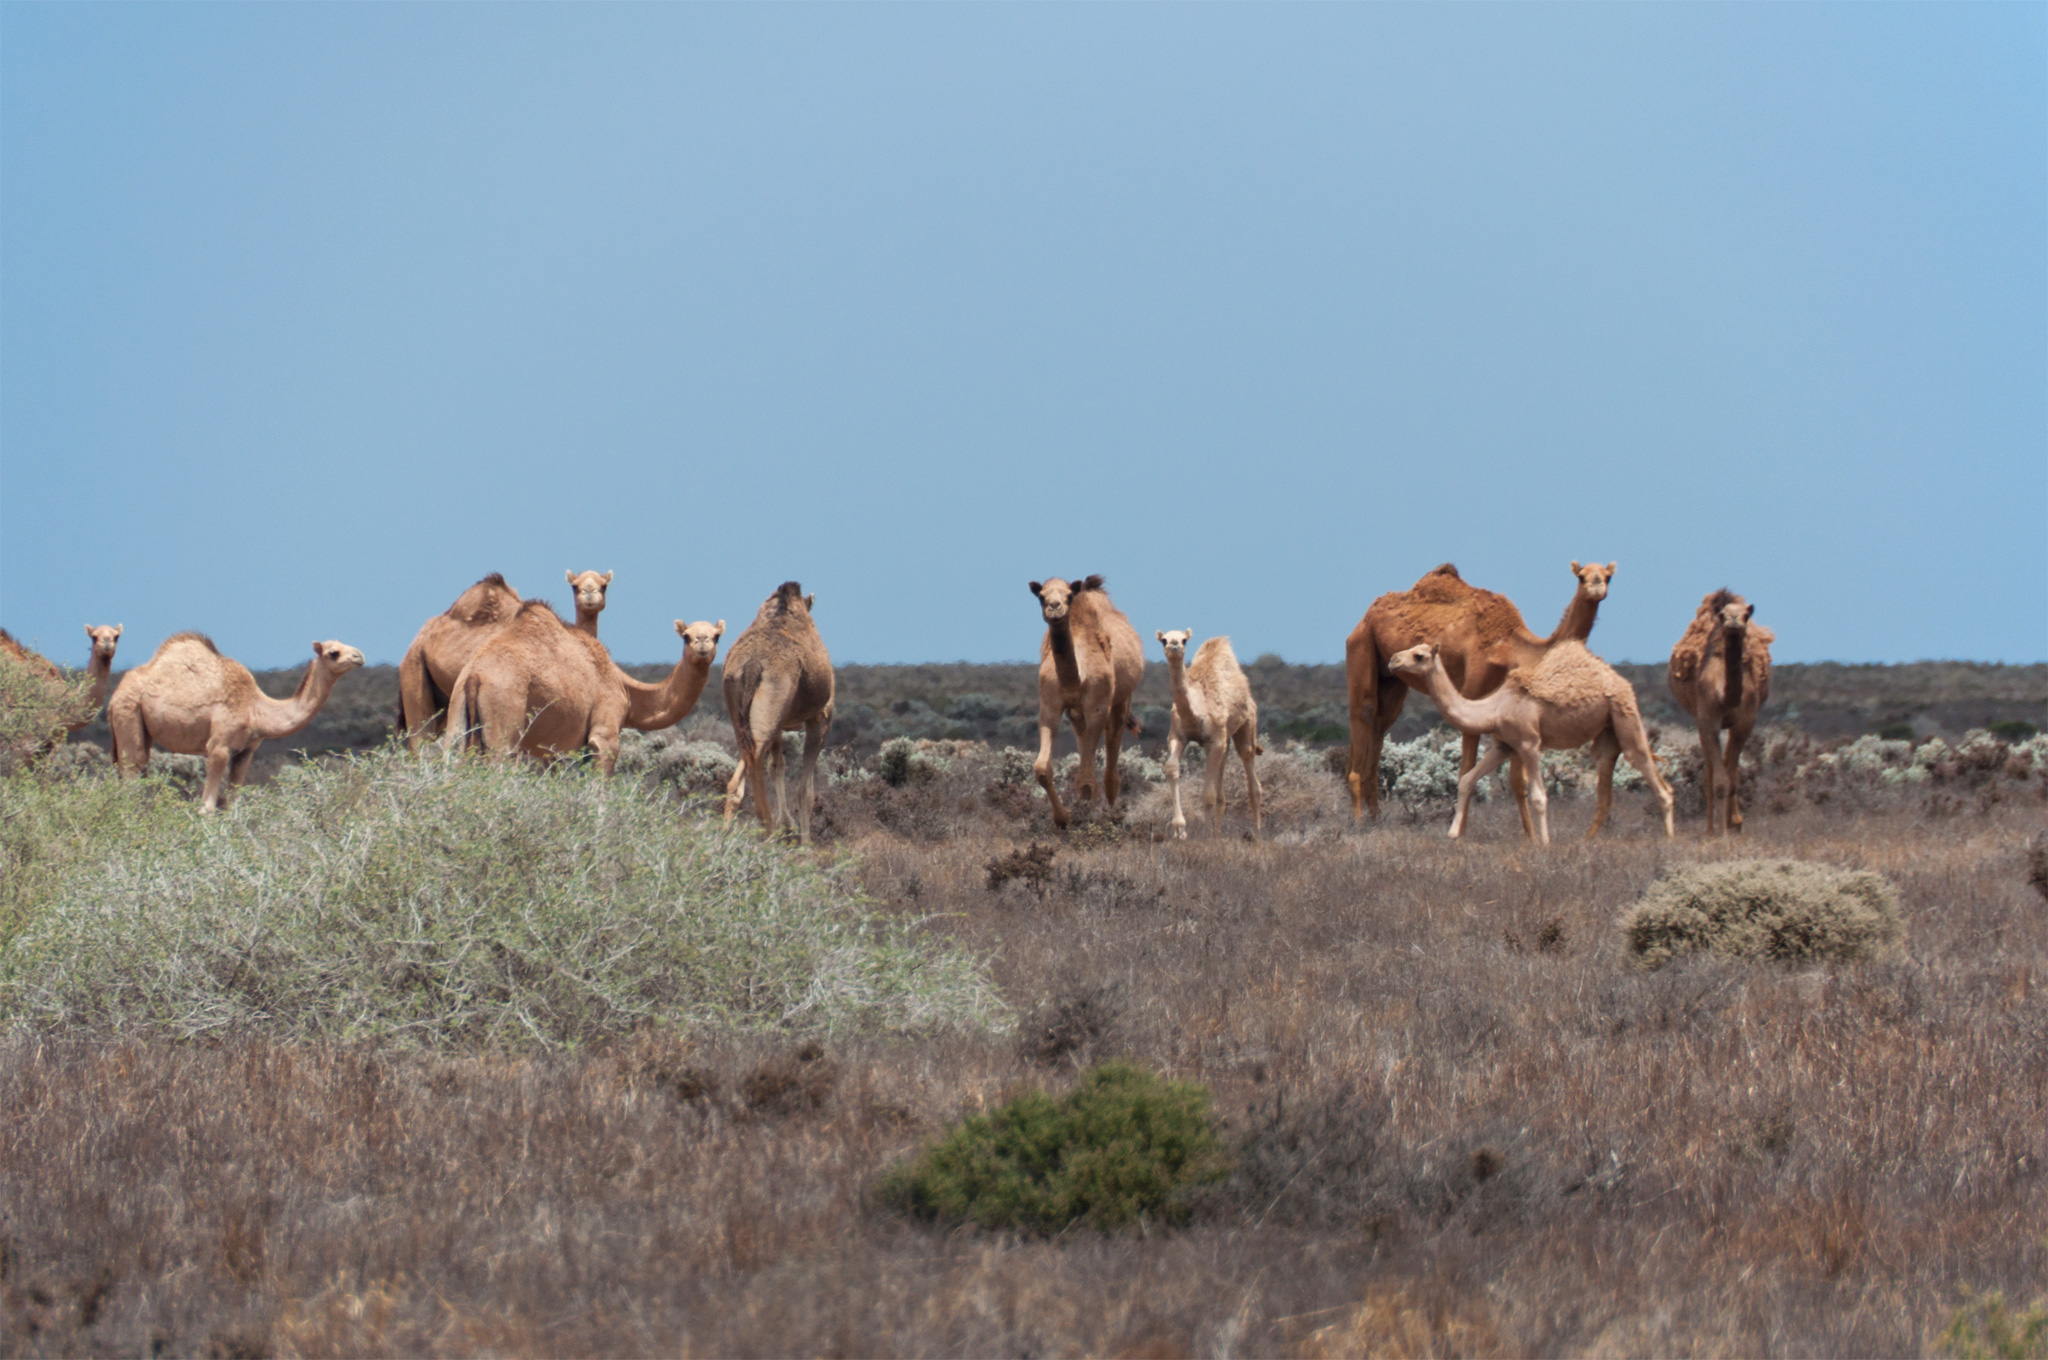 Camels next to the road - Верблюды рядом с дорогой